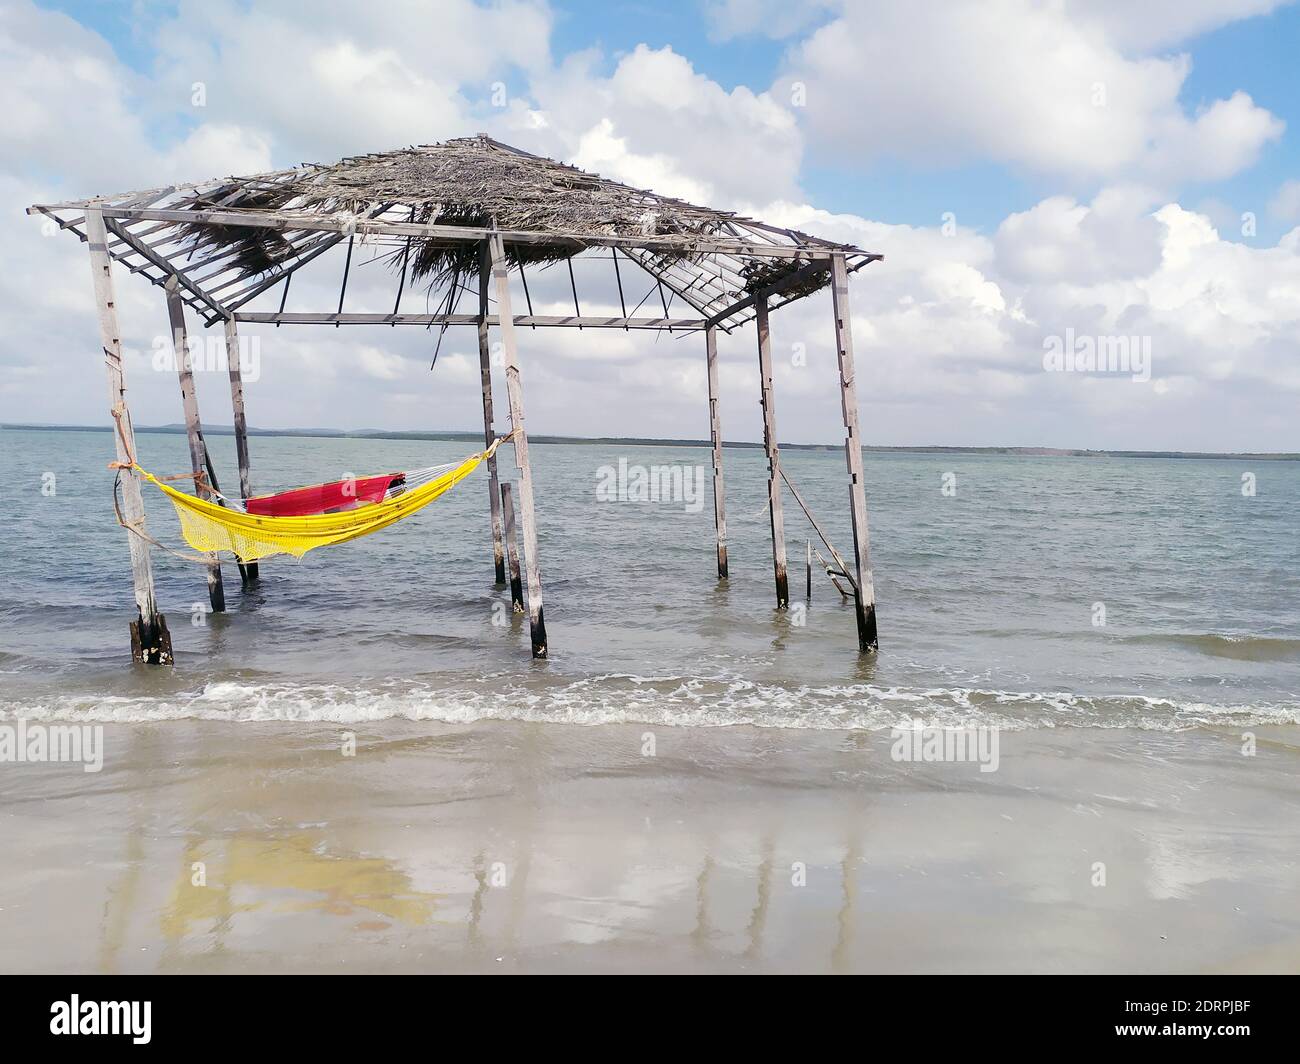 Tente rustique et ancienne avec hamac à l'intérieur de la plage. Plage déserte de Mangue Seco; Jandaira; Bahia; Brésil Banque D'Images